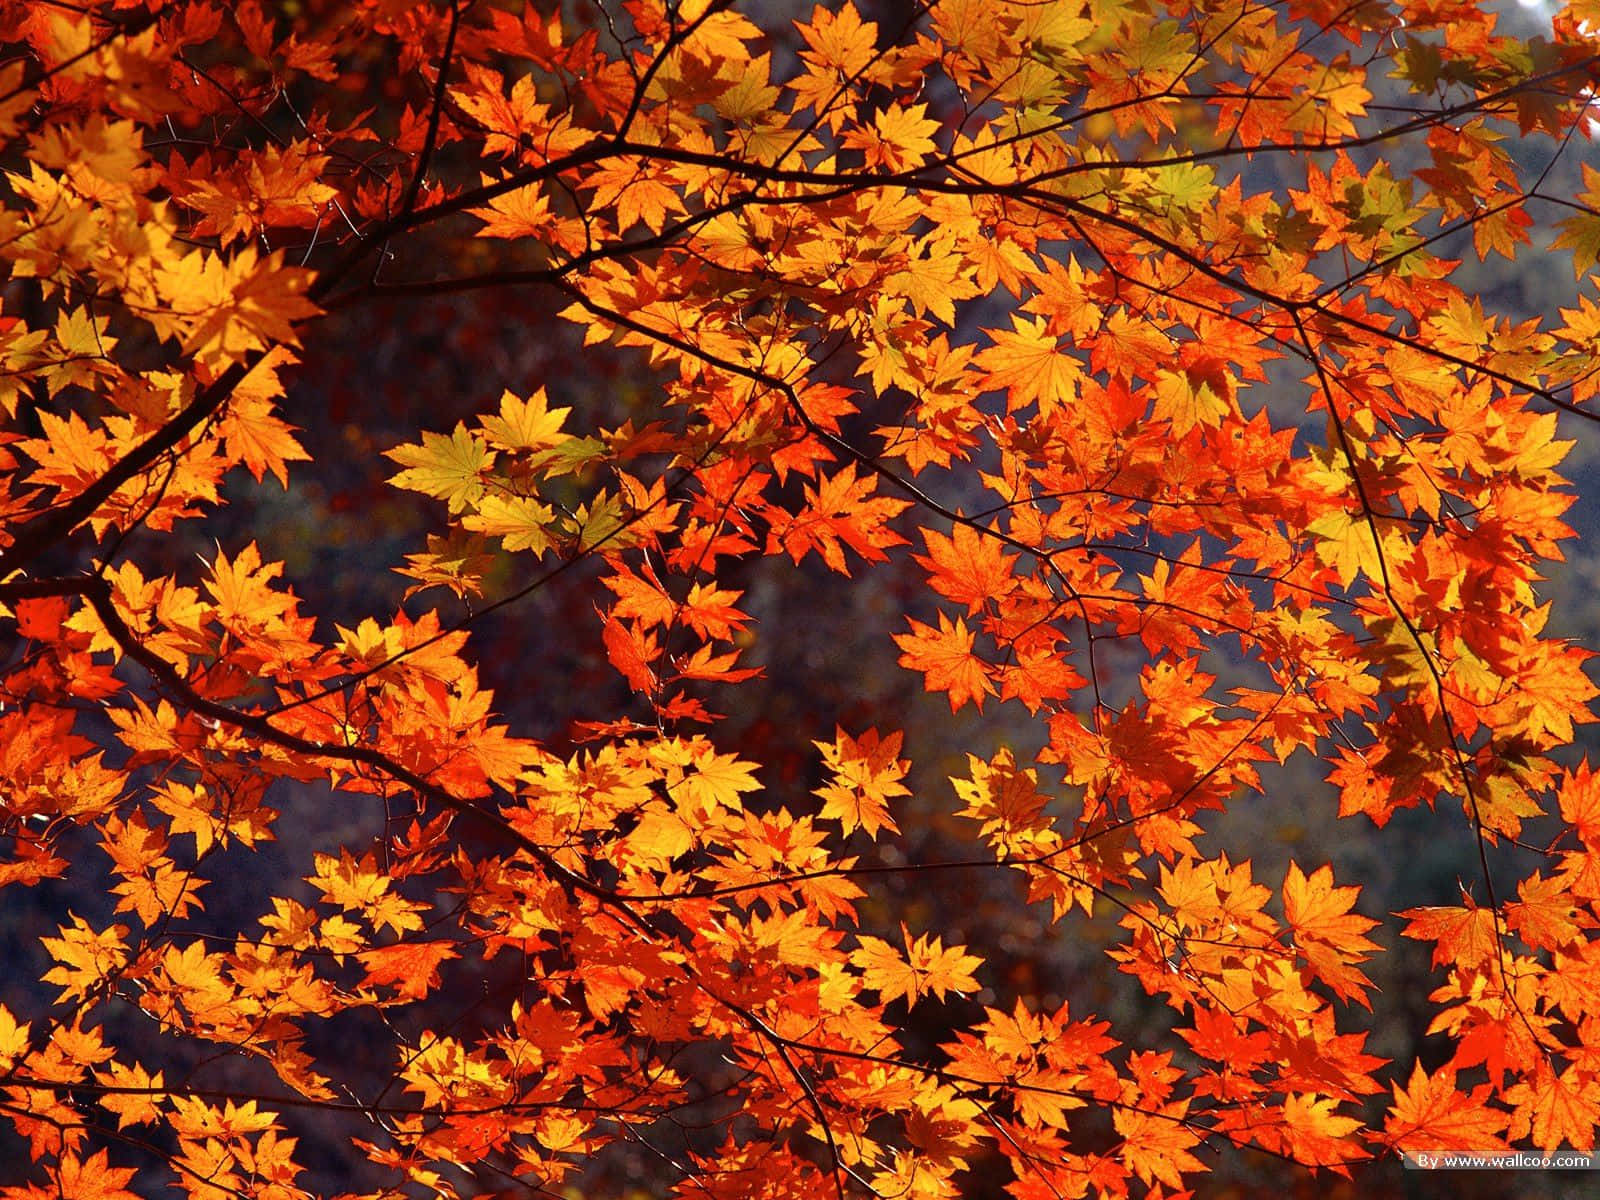 Velkom den skønhed fra efteråret med denne vidunderlige efterårsbegivenhed. Wallpaper